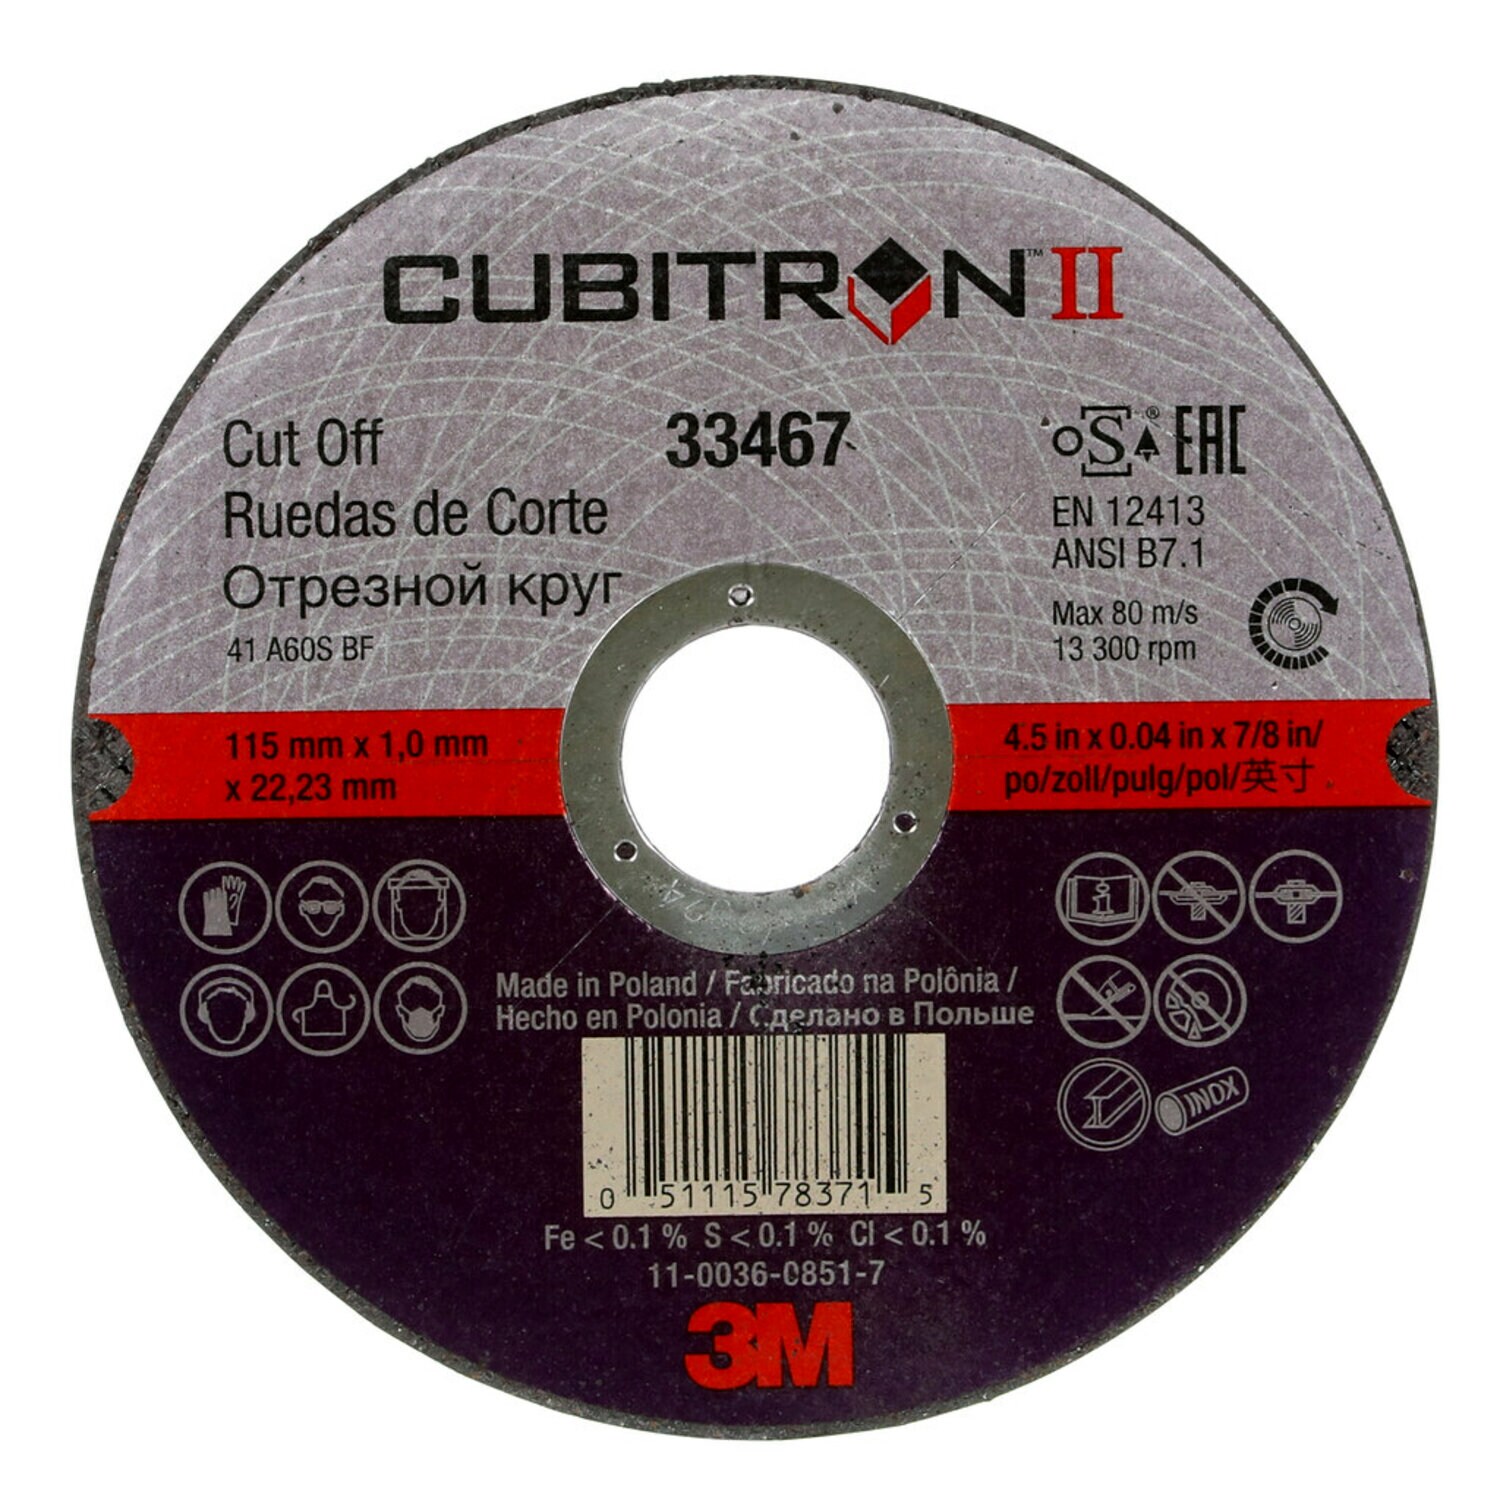 7100032407 - 3M Cubitron II Cut-Off Wheel, 33467, 4.5 in x 0.04 in x 7/8 in, 5 per
pack, 6 packs per case